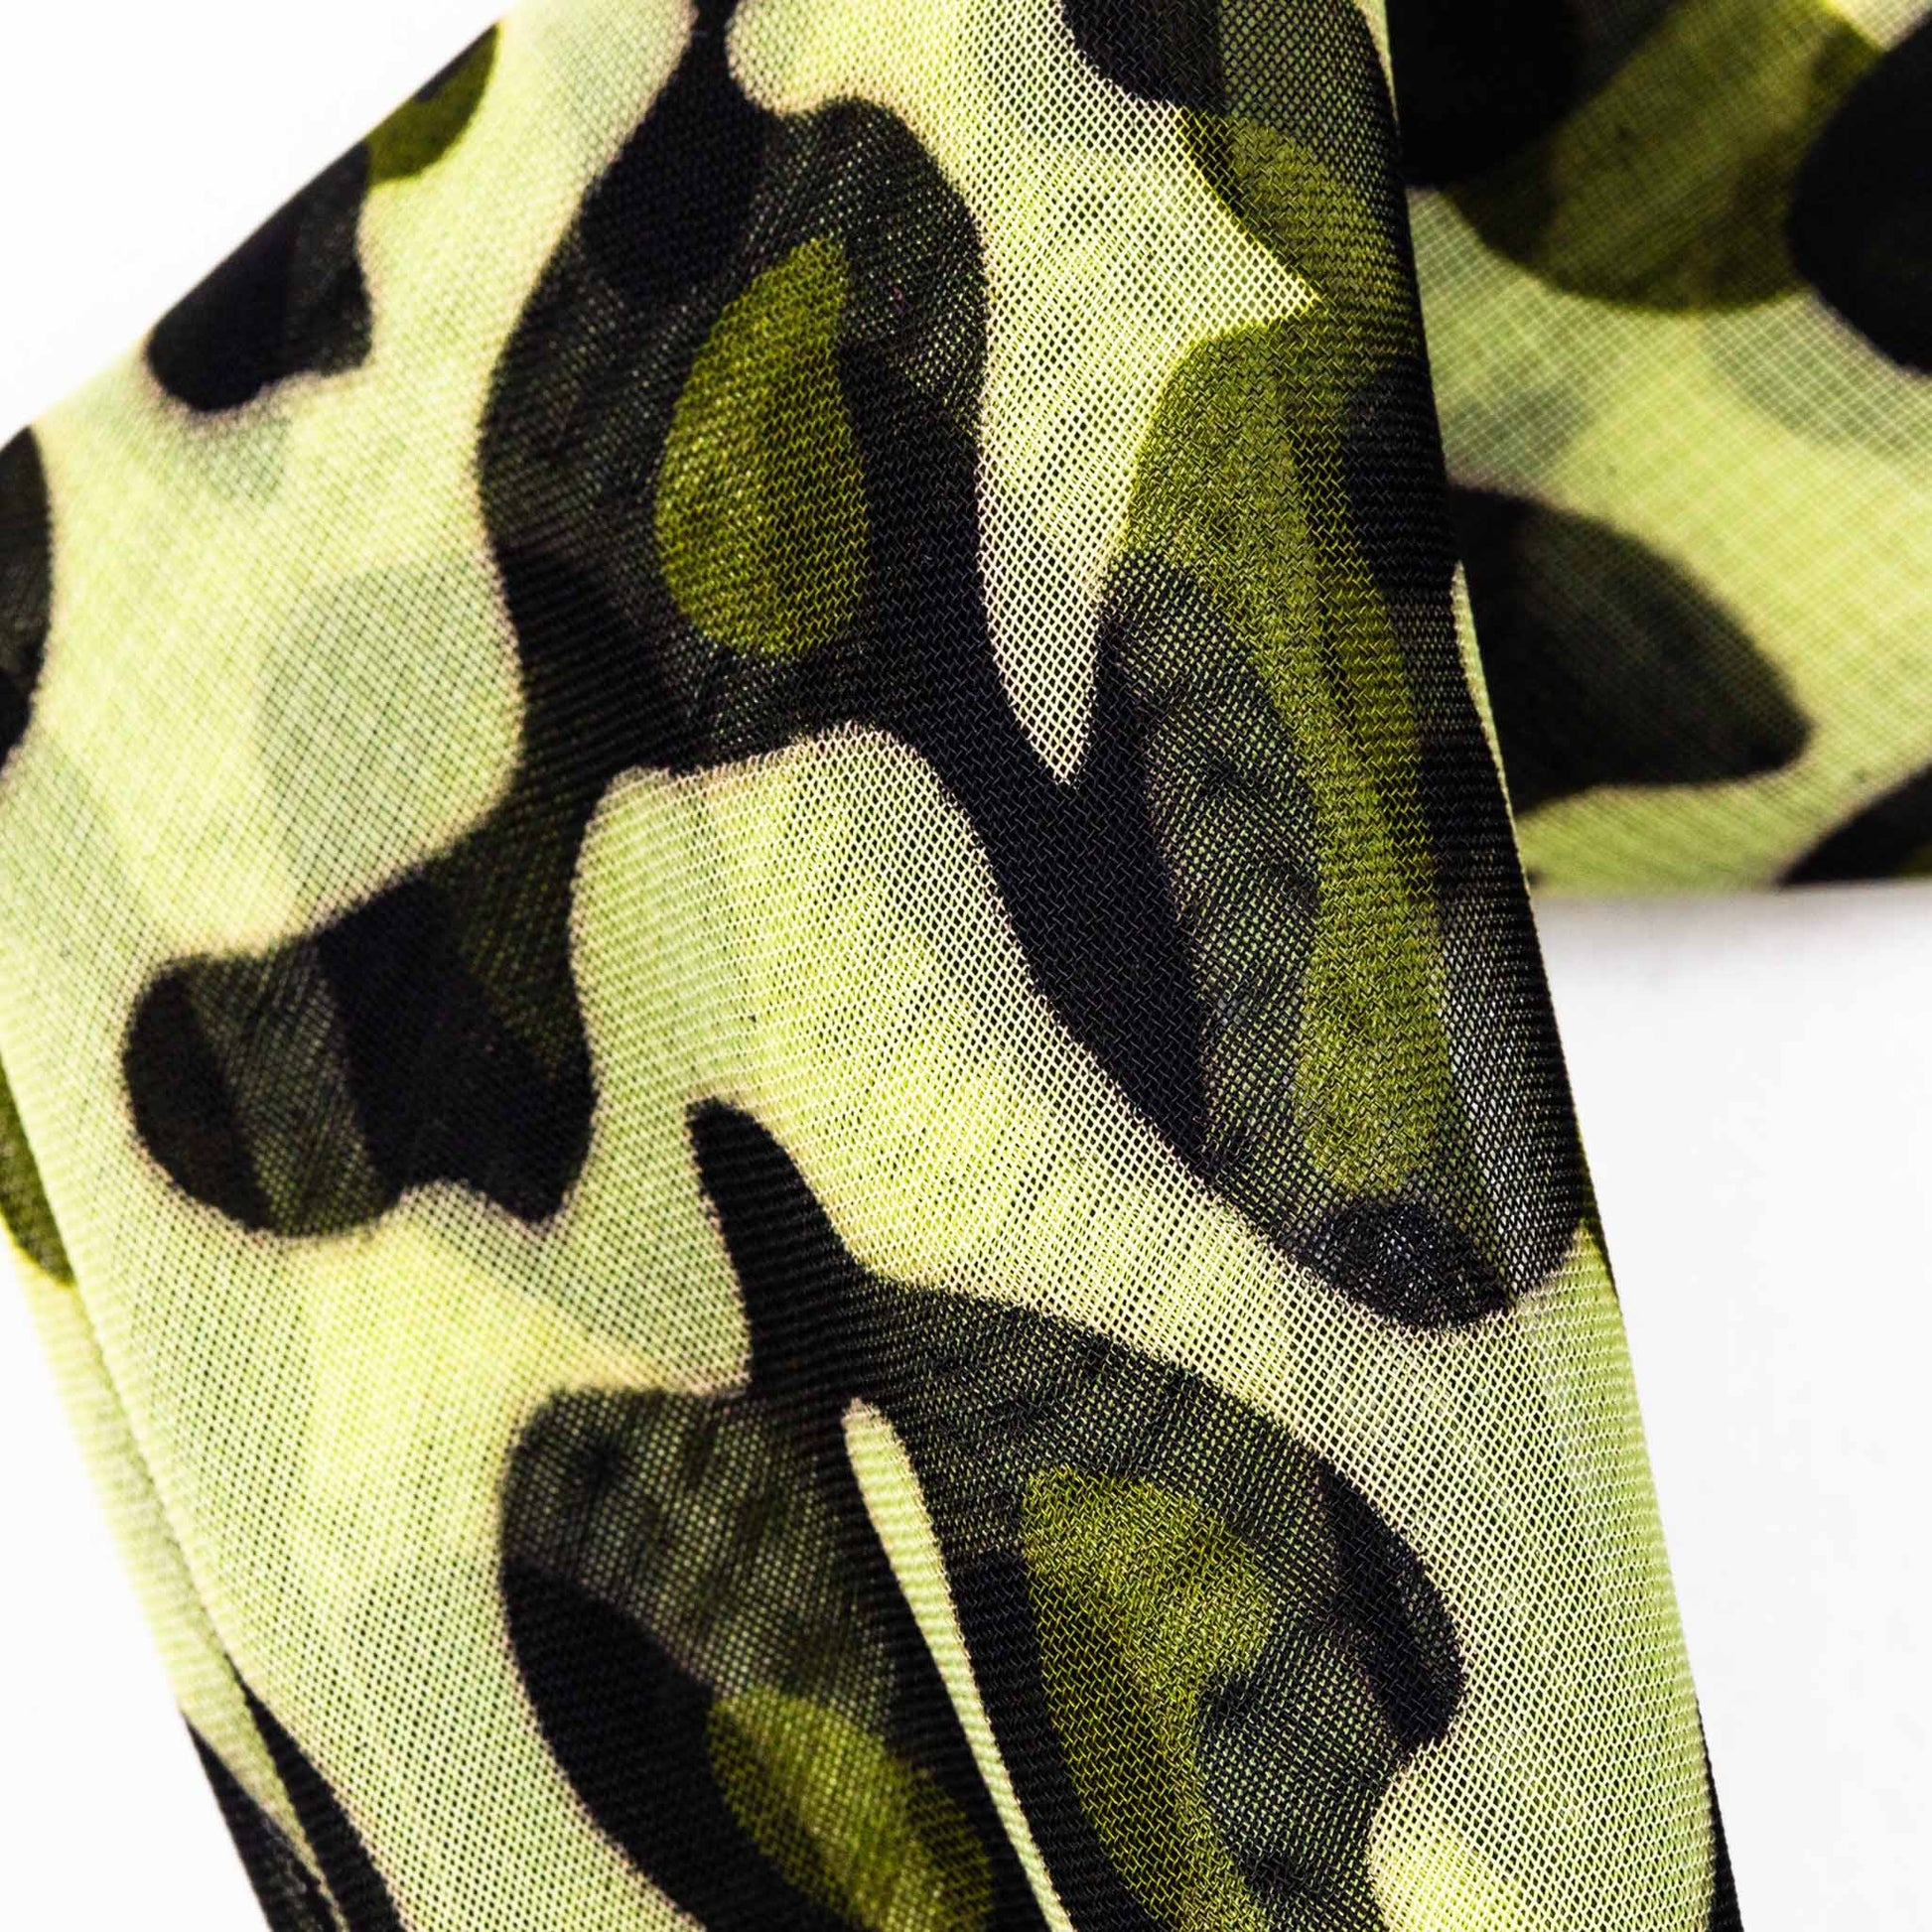 Eșarfă damă din mătase cu animal print și dungi, 65 x 65 cm - Verde